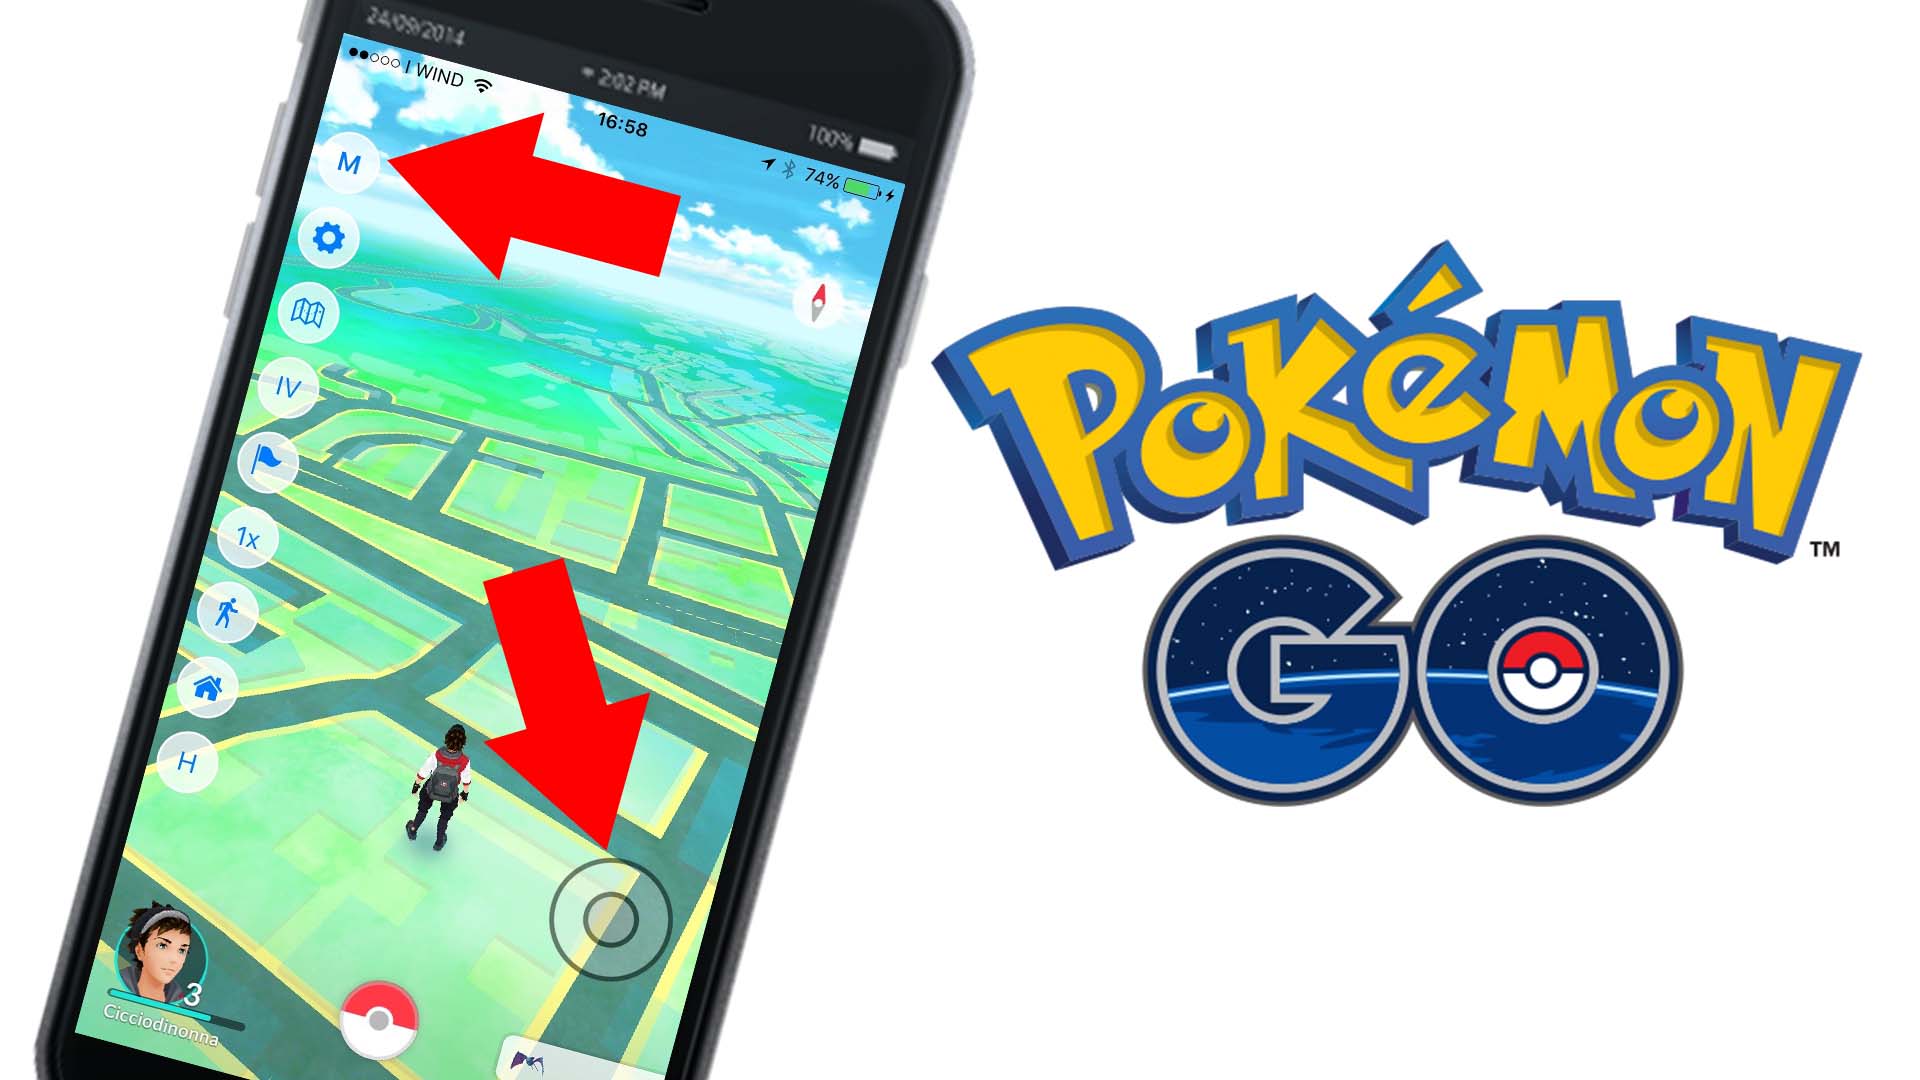 Trucchi Pokémon GO per iPhone iOS, come muoversi nella mappa restando fermi